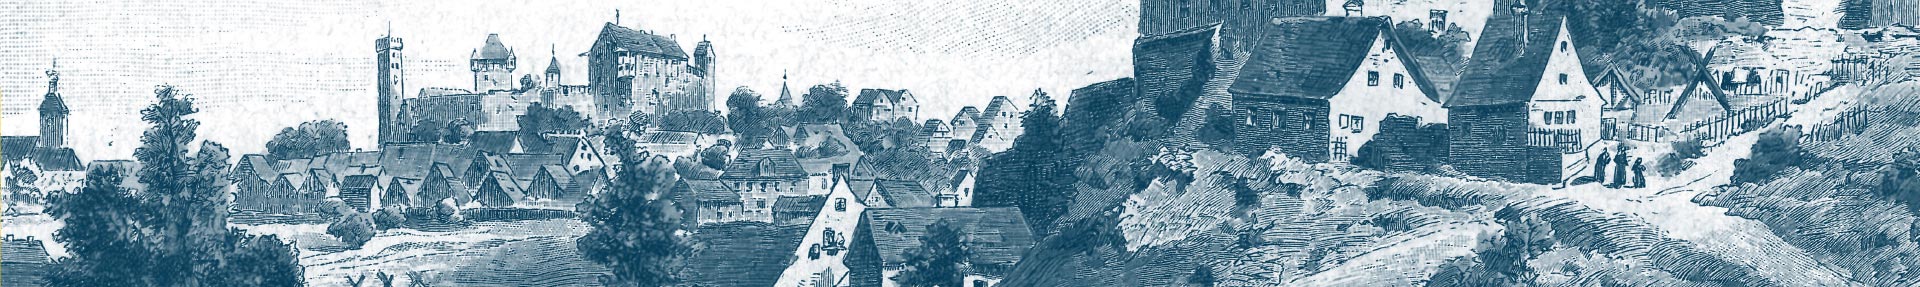 Zeichnung von Burg Abenberg